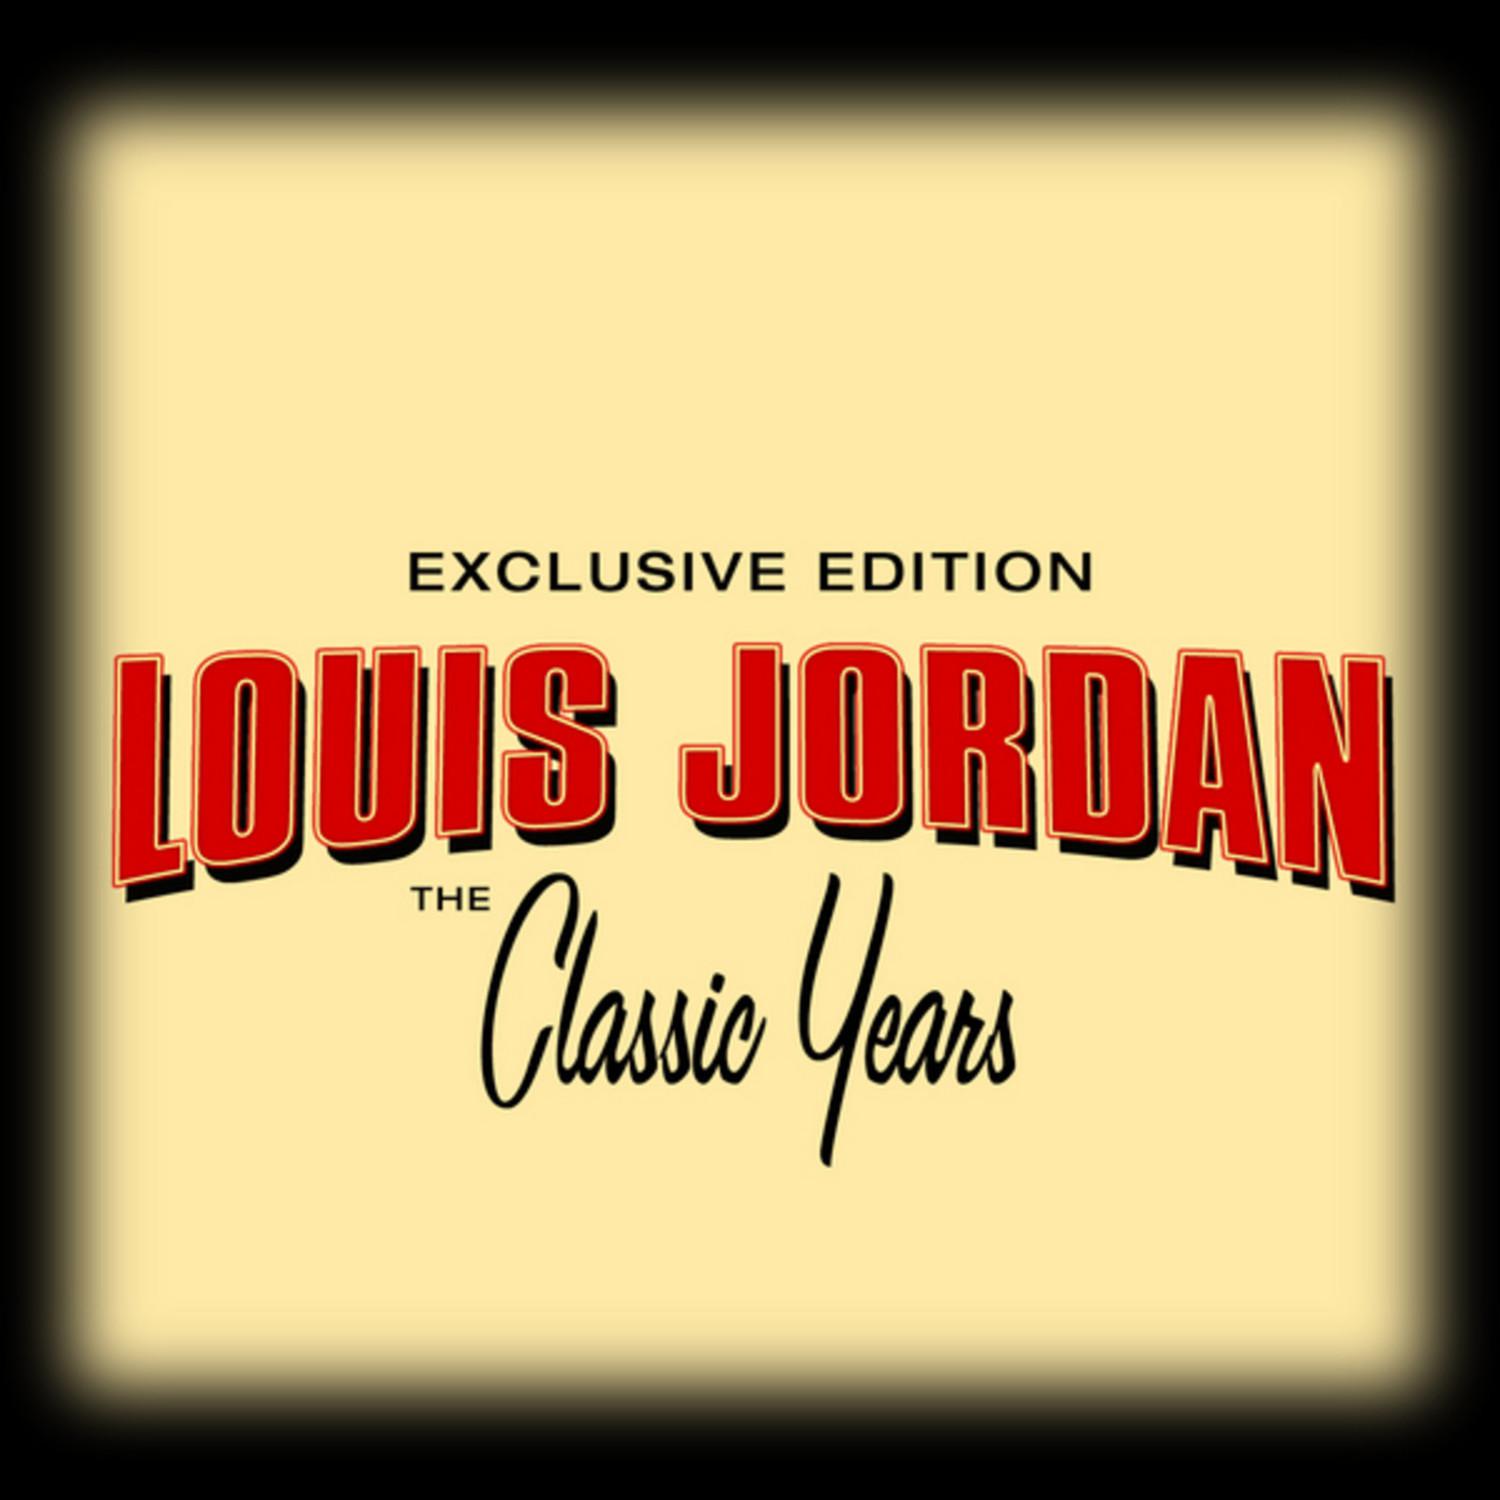 Classic Years of Louis Jordan